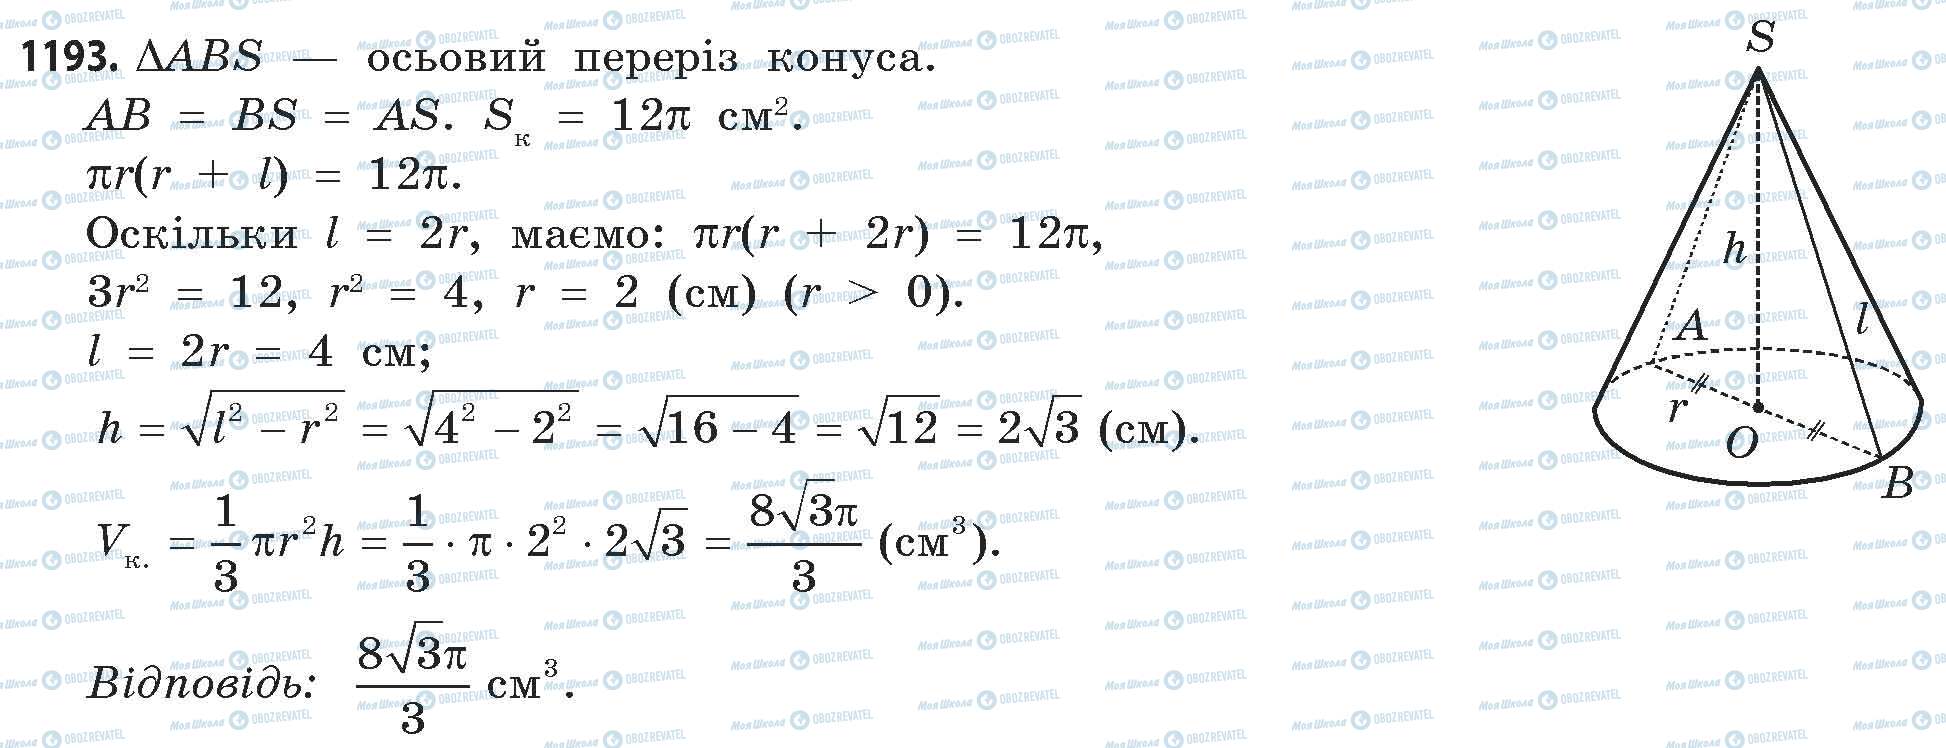 ГДЗ Математика 11 класс страница 1193